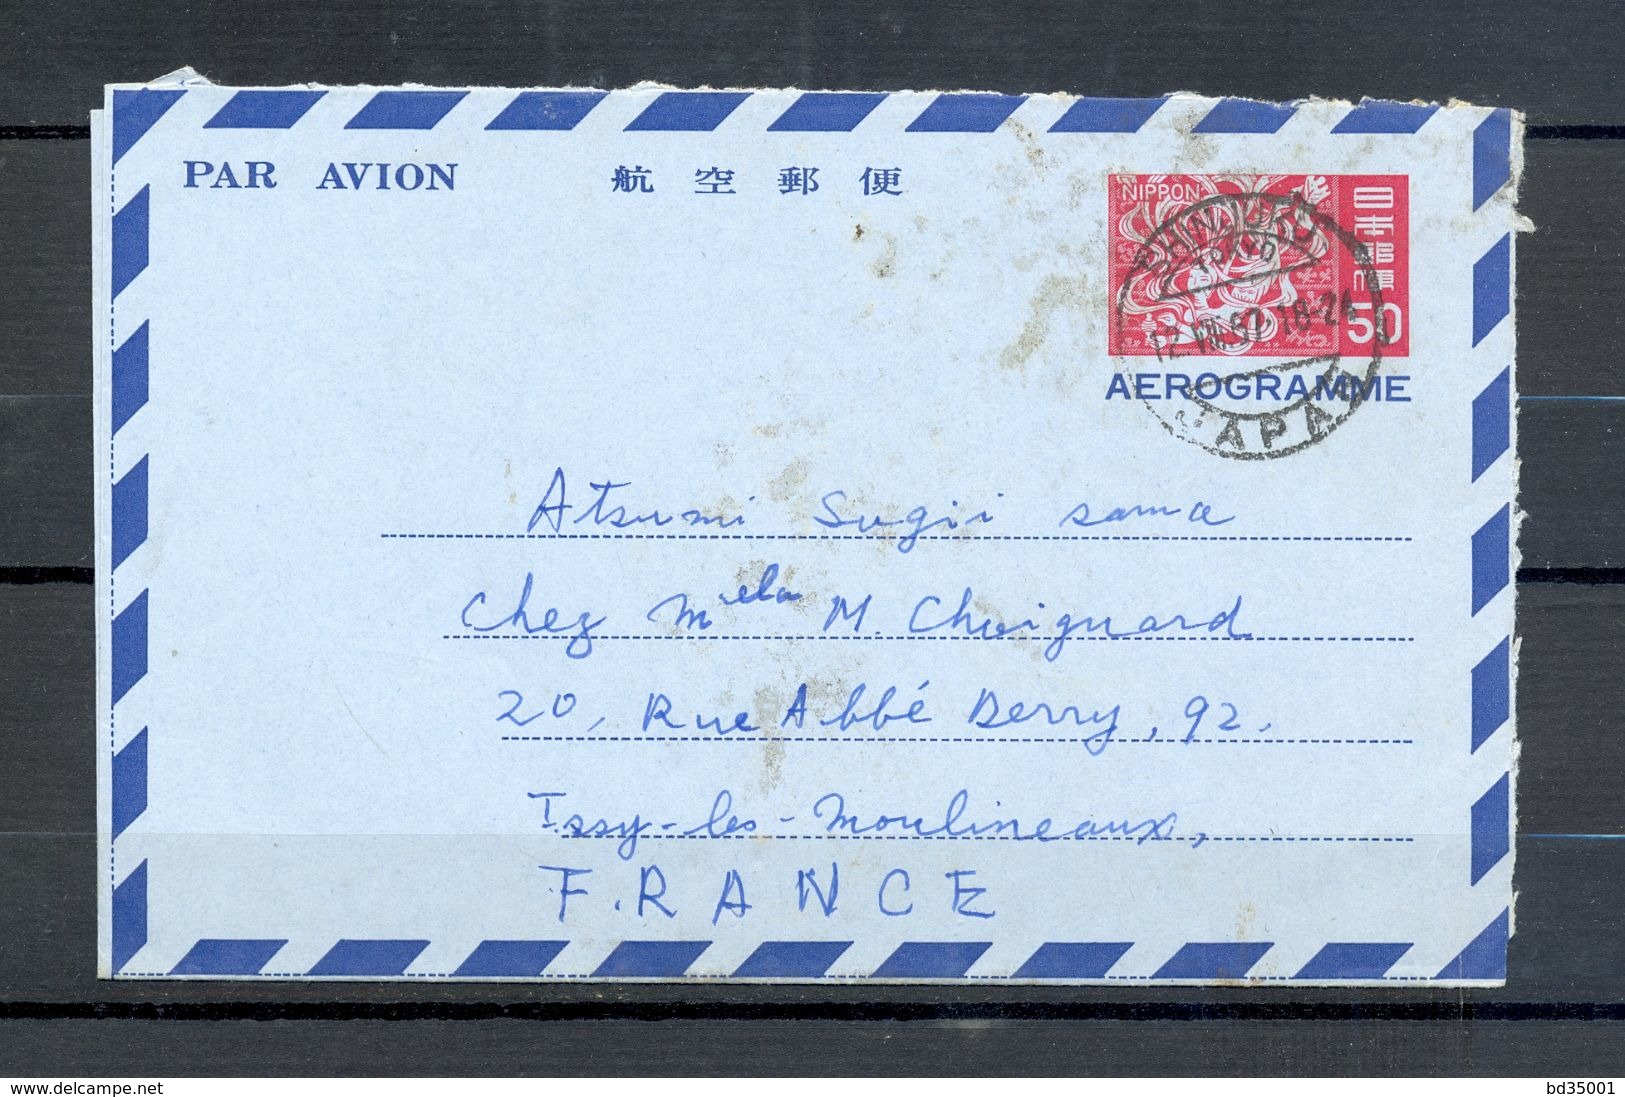 AEROGRAMME AIR LETTER PAR AVION - JAPON JAPAN - Tokyo Vers Issy Les Moulineaux - 1967 - (5) - Aerogramas